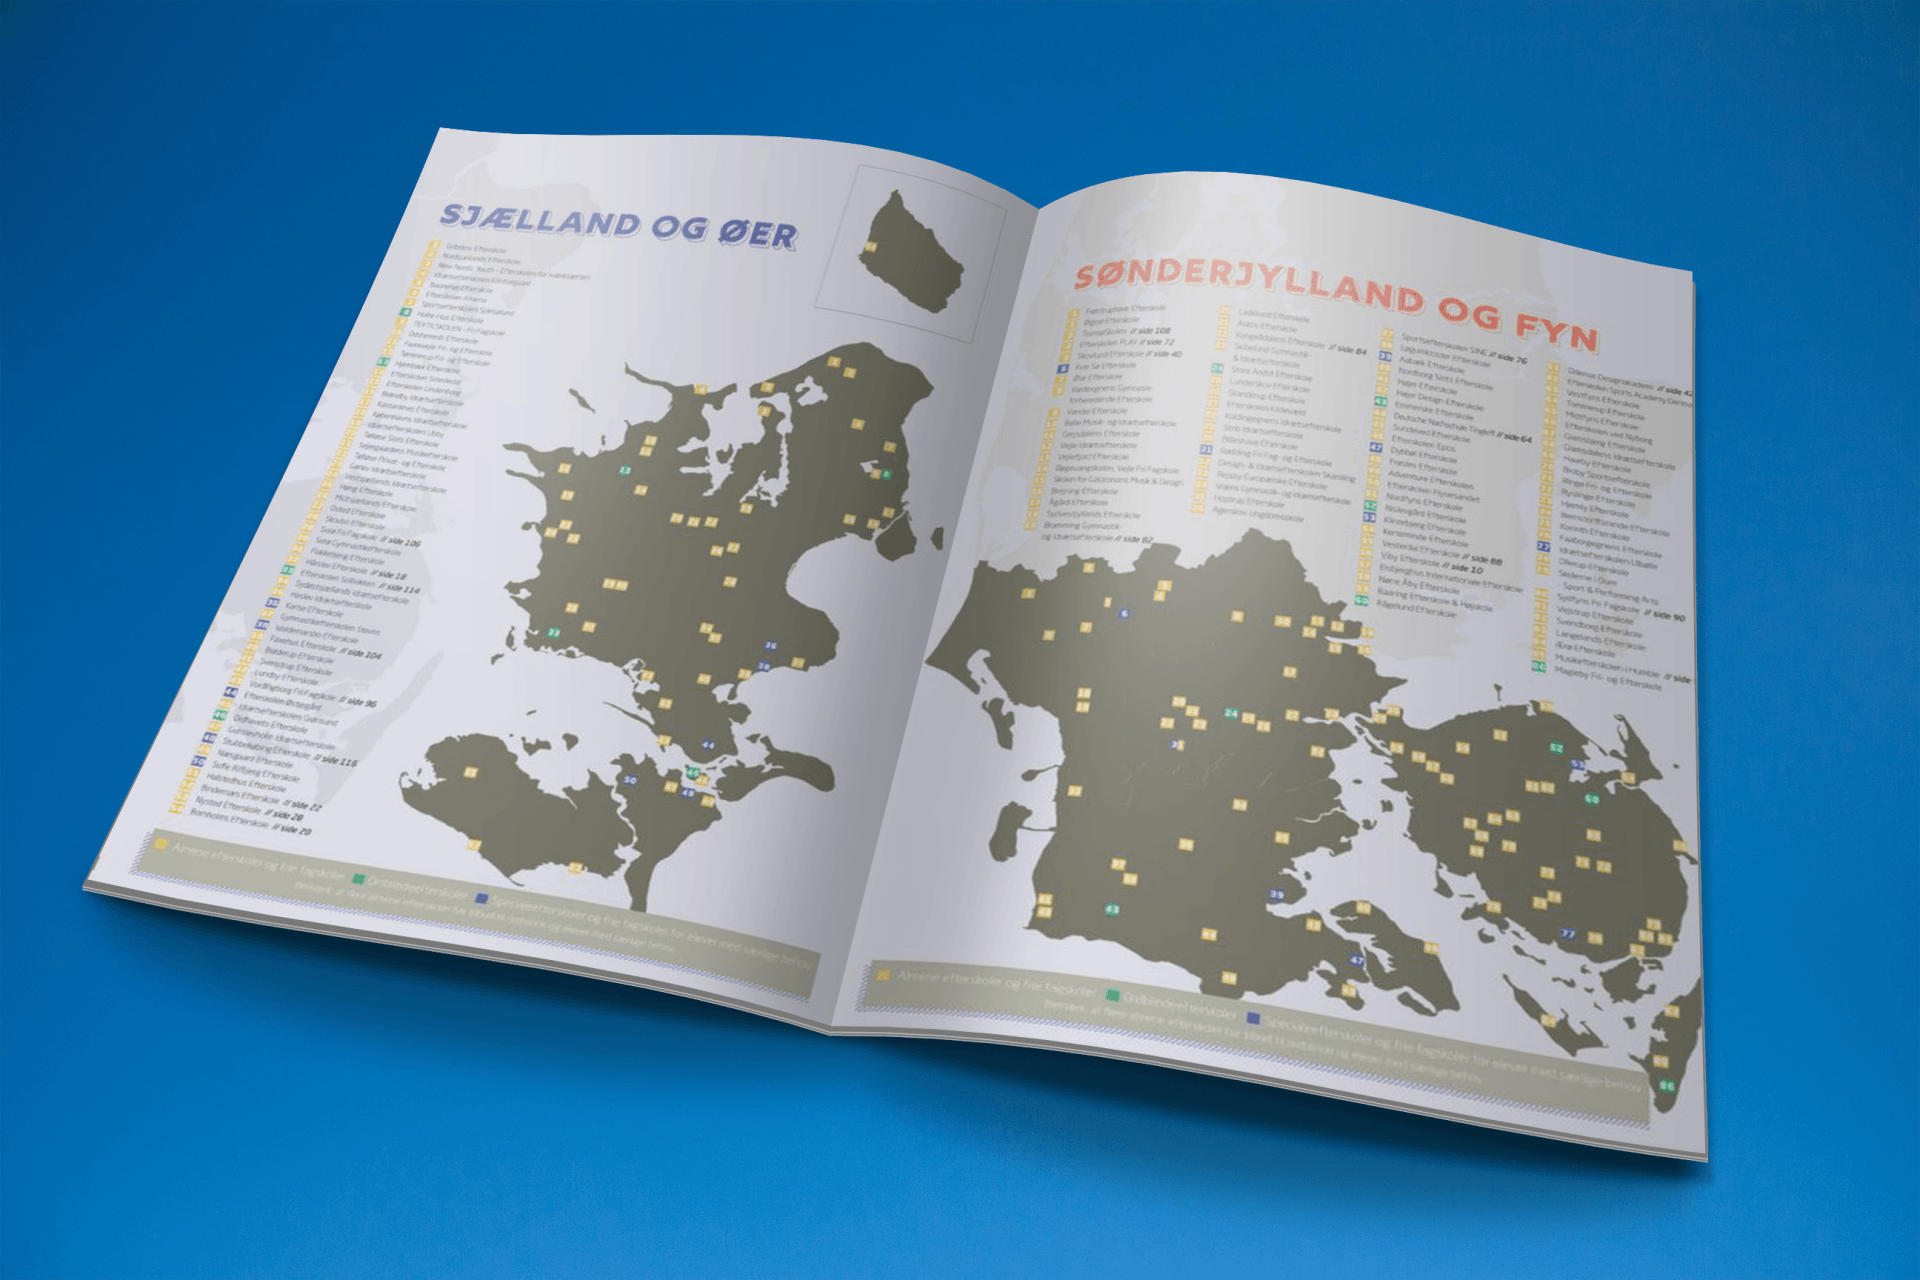 Magasinet er slået op på to sider og viser en artikel fra magasinet med et Danmarkskort over danske efterskoler. Baggrunden på billedet er blå.